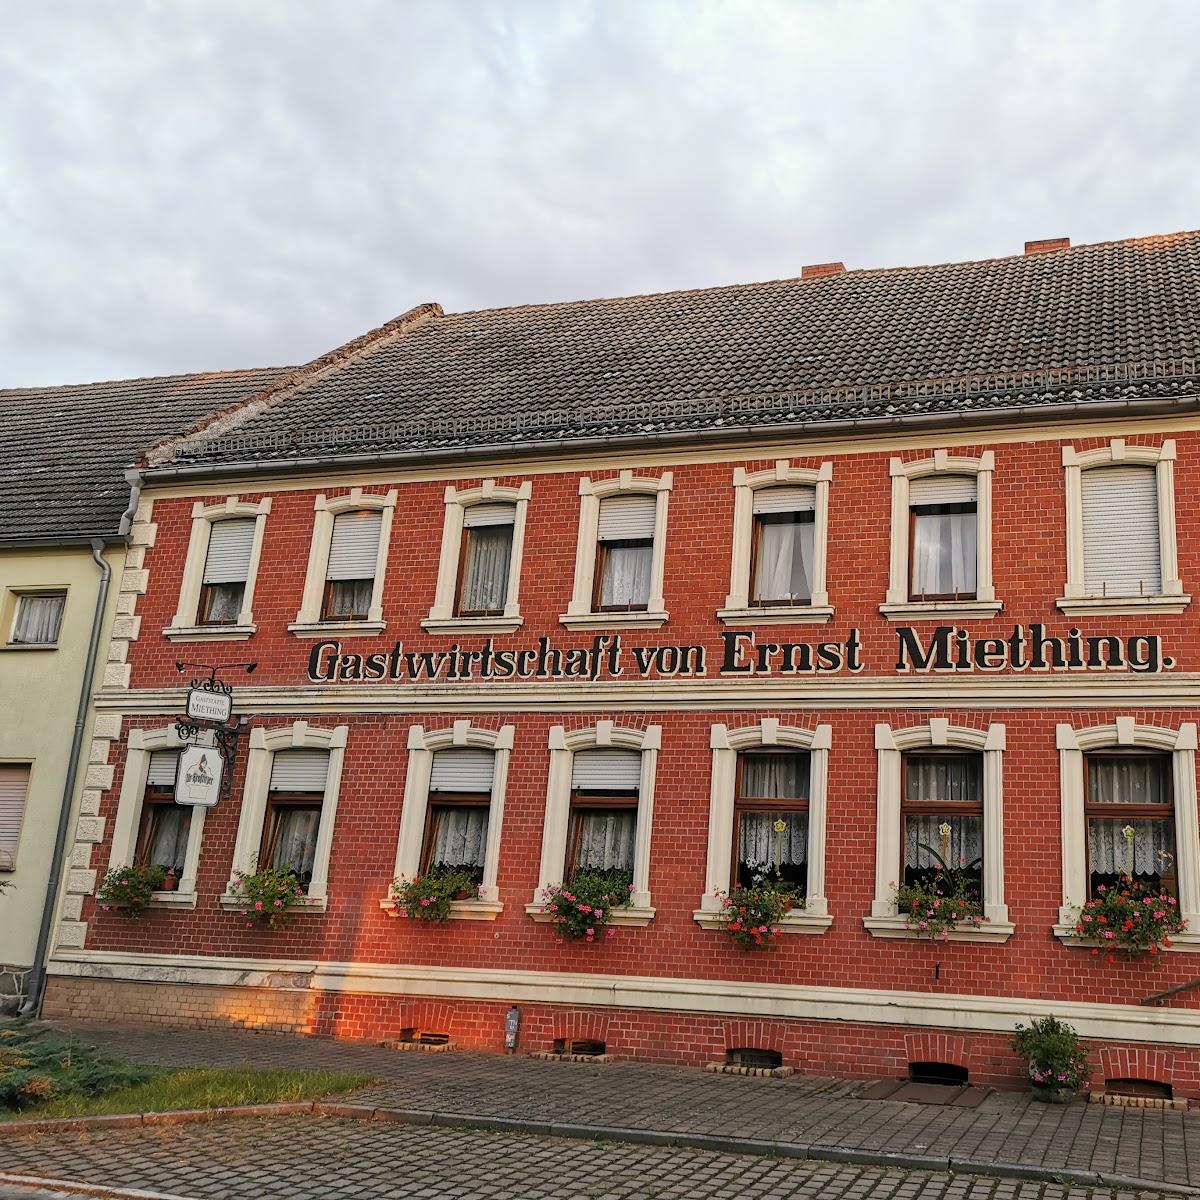 Restaurant "Gasthaus & Pension Miething" in Niedergörsdorf